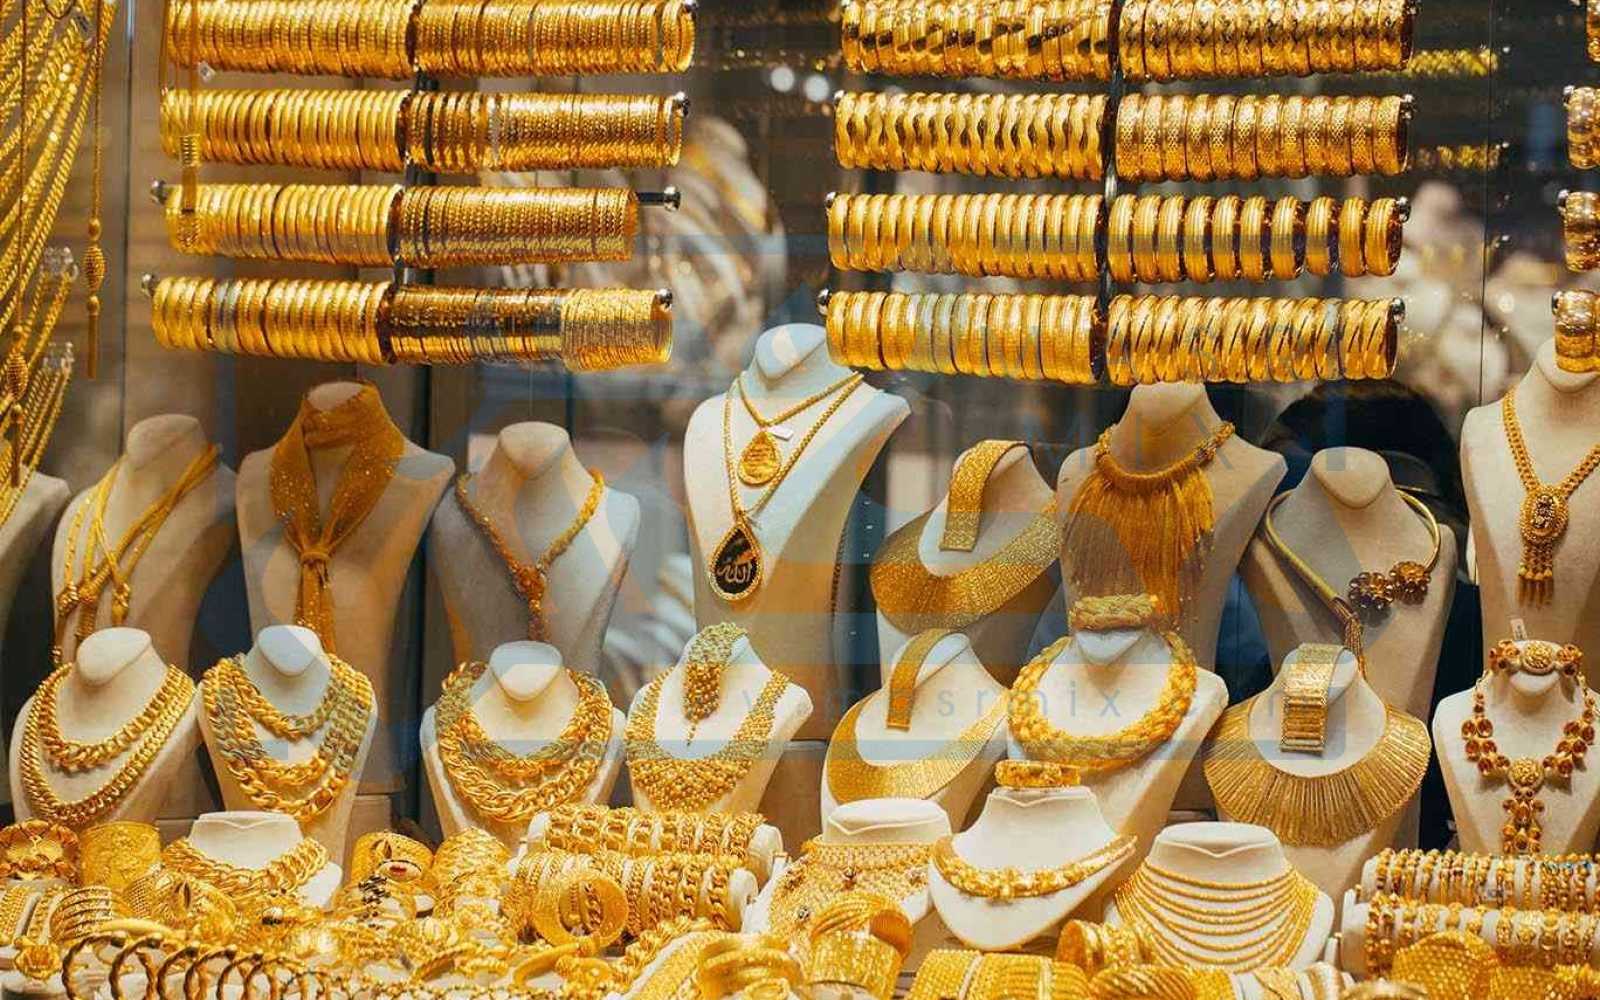 سعر الذهب في السعودية الآن